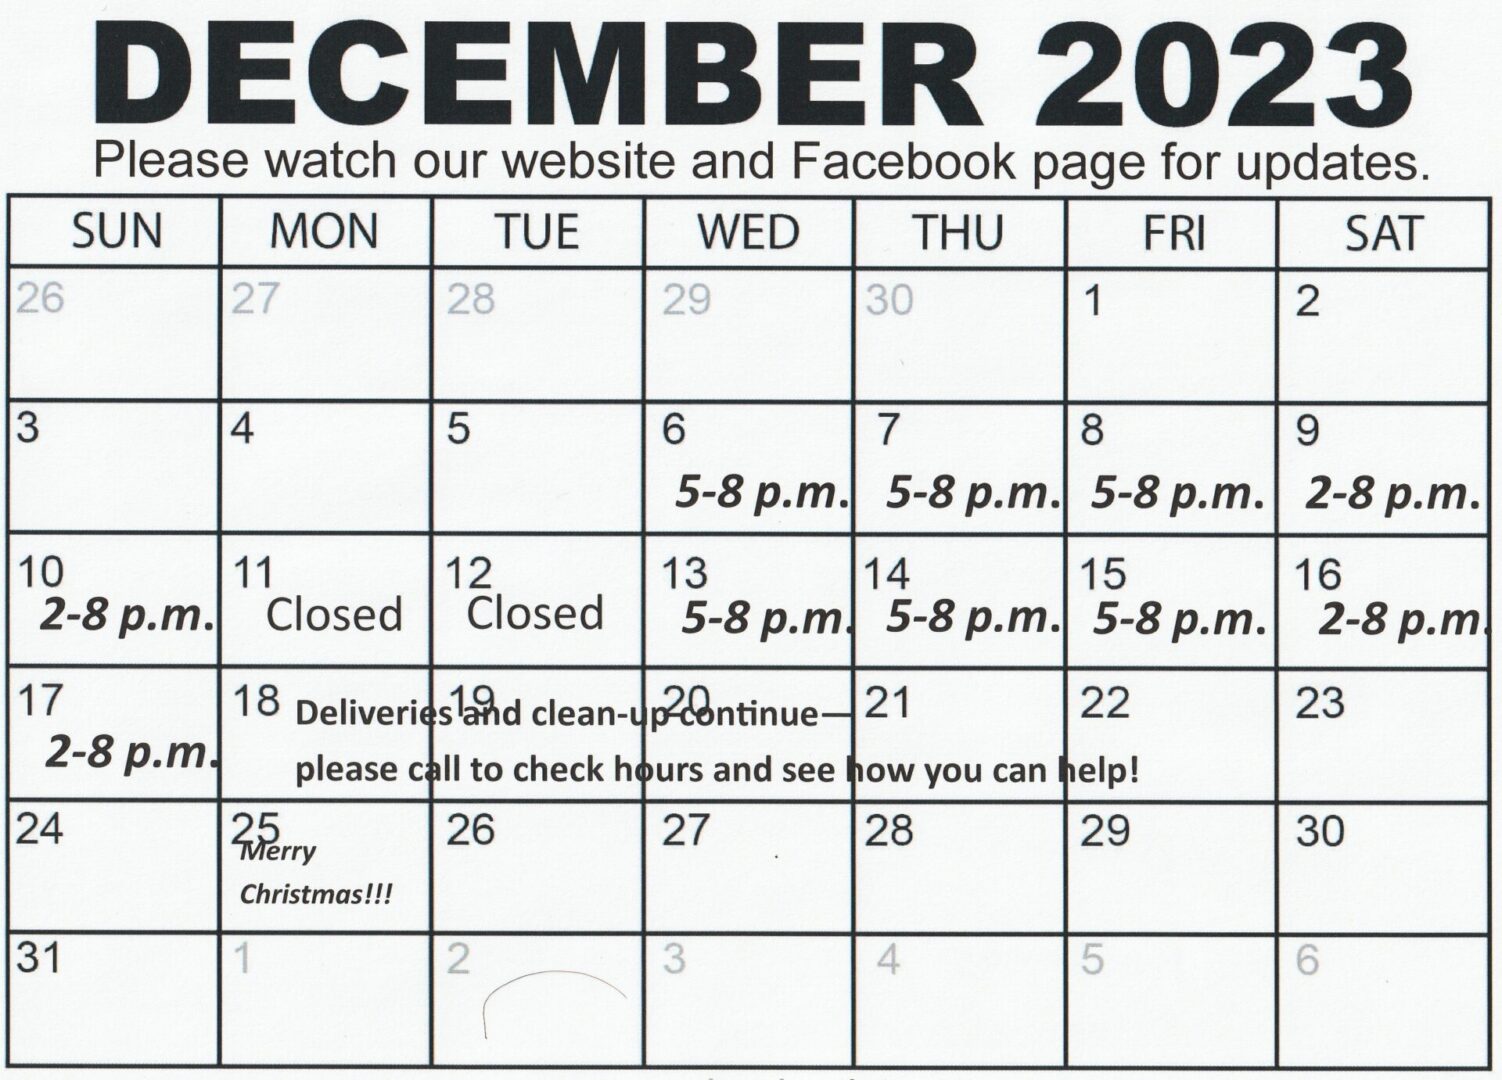 SC 2023 calendar only